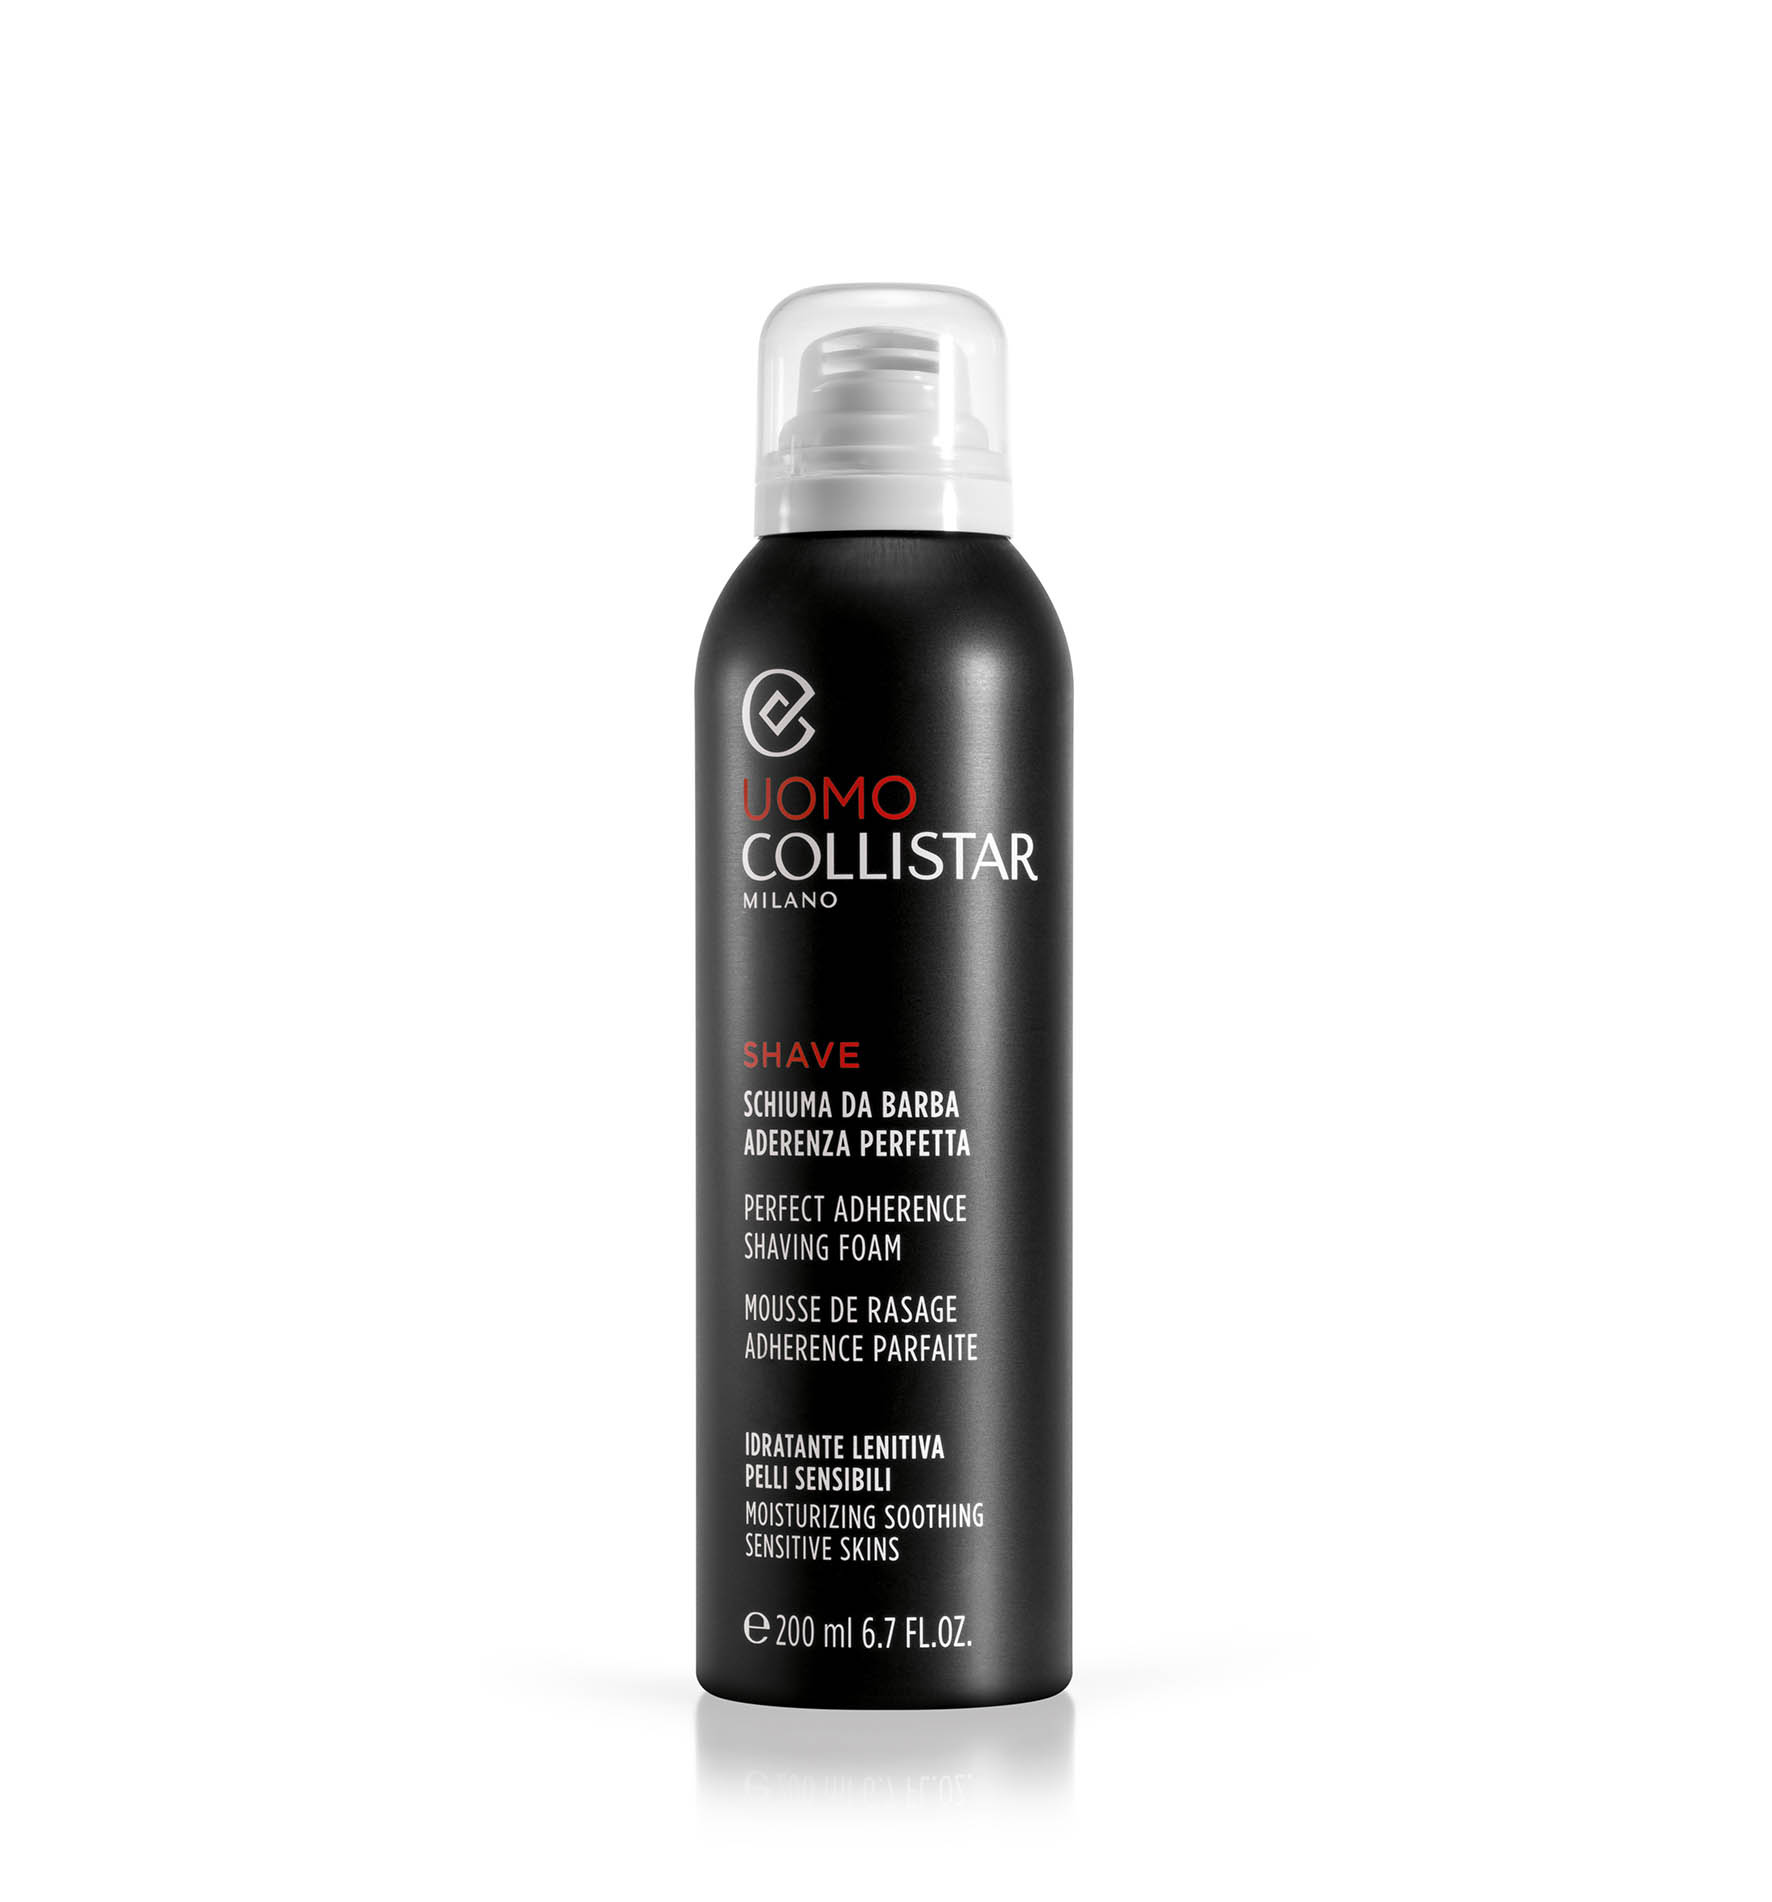 DOSKONALE PRZYLEGAJĄCA PIANKA DO GOLENIA - Produkty do golenia i po goleniu | Collistar - Shop Online Ufficiale